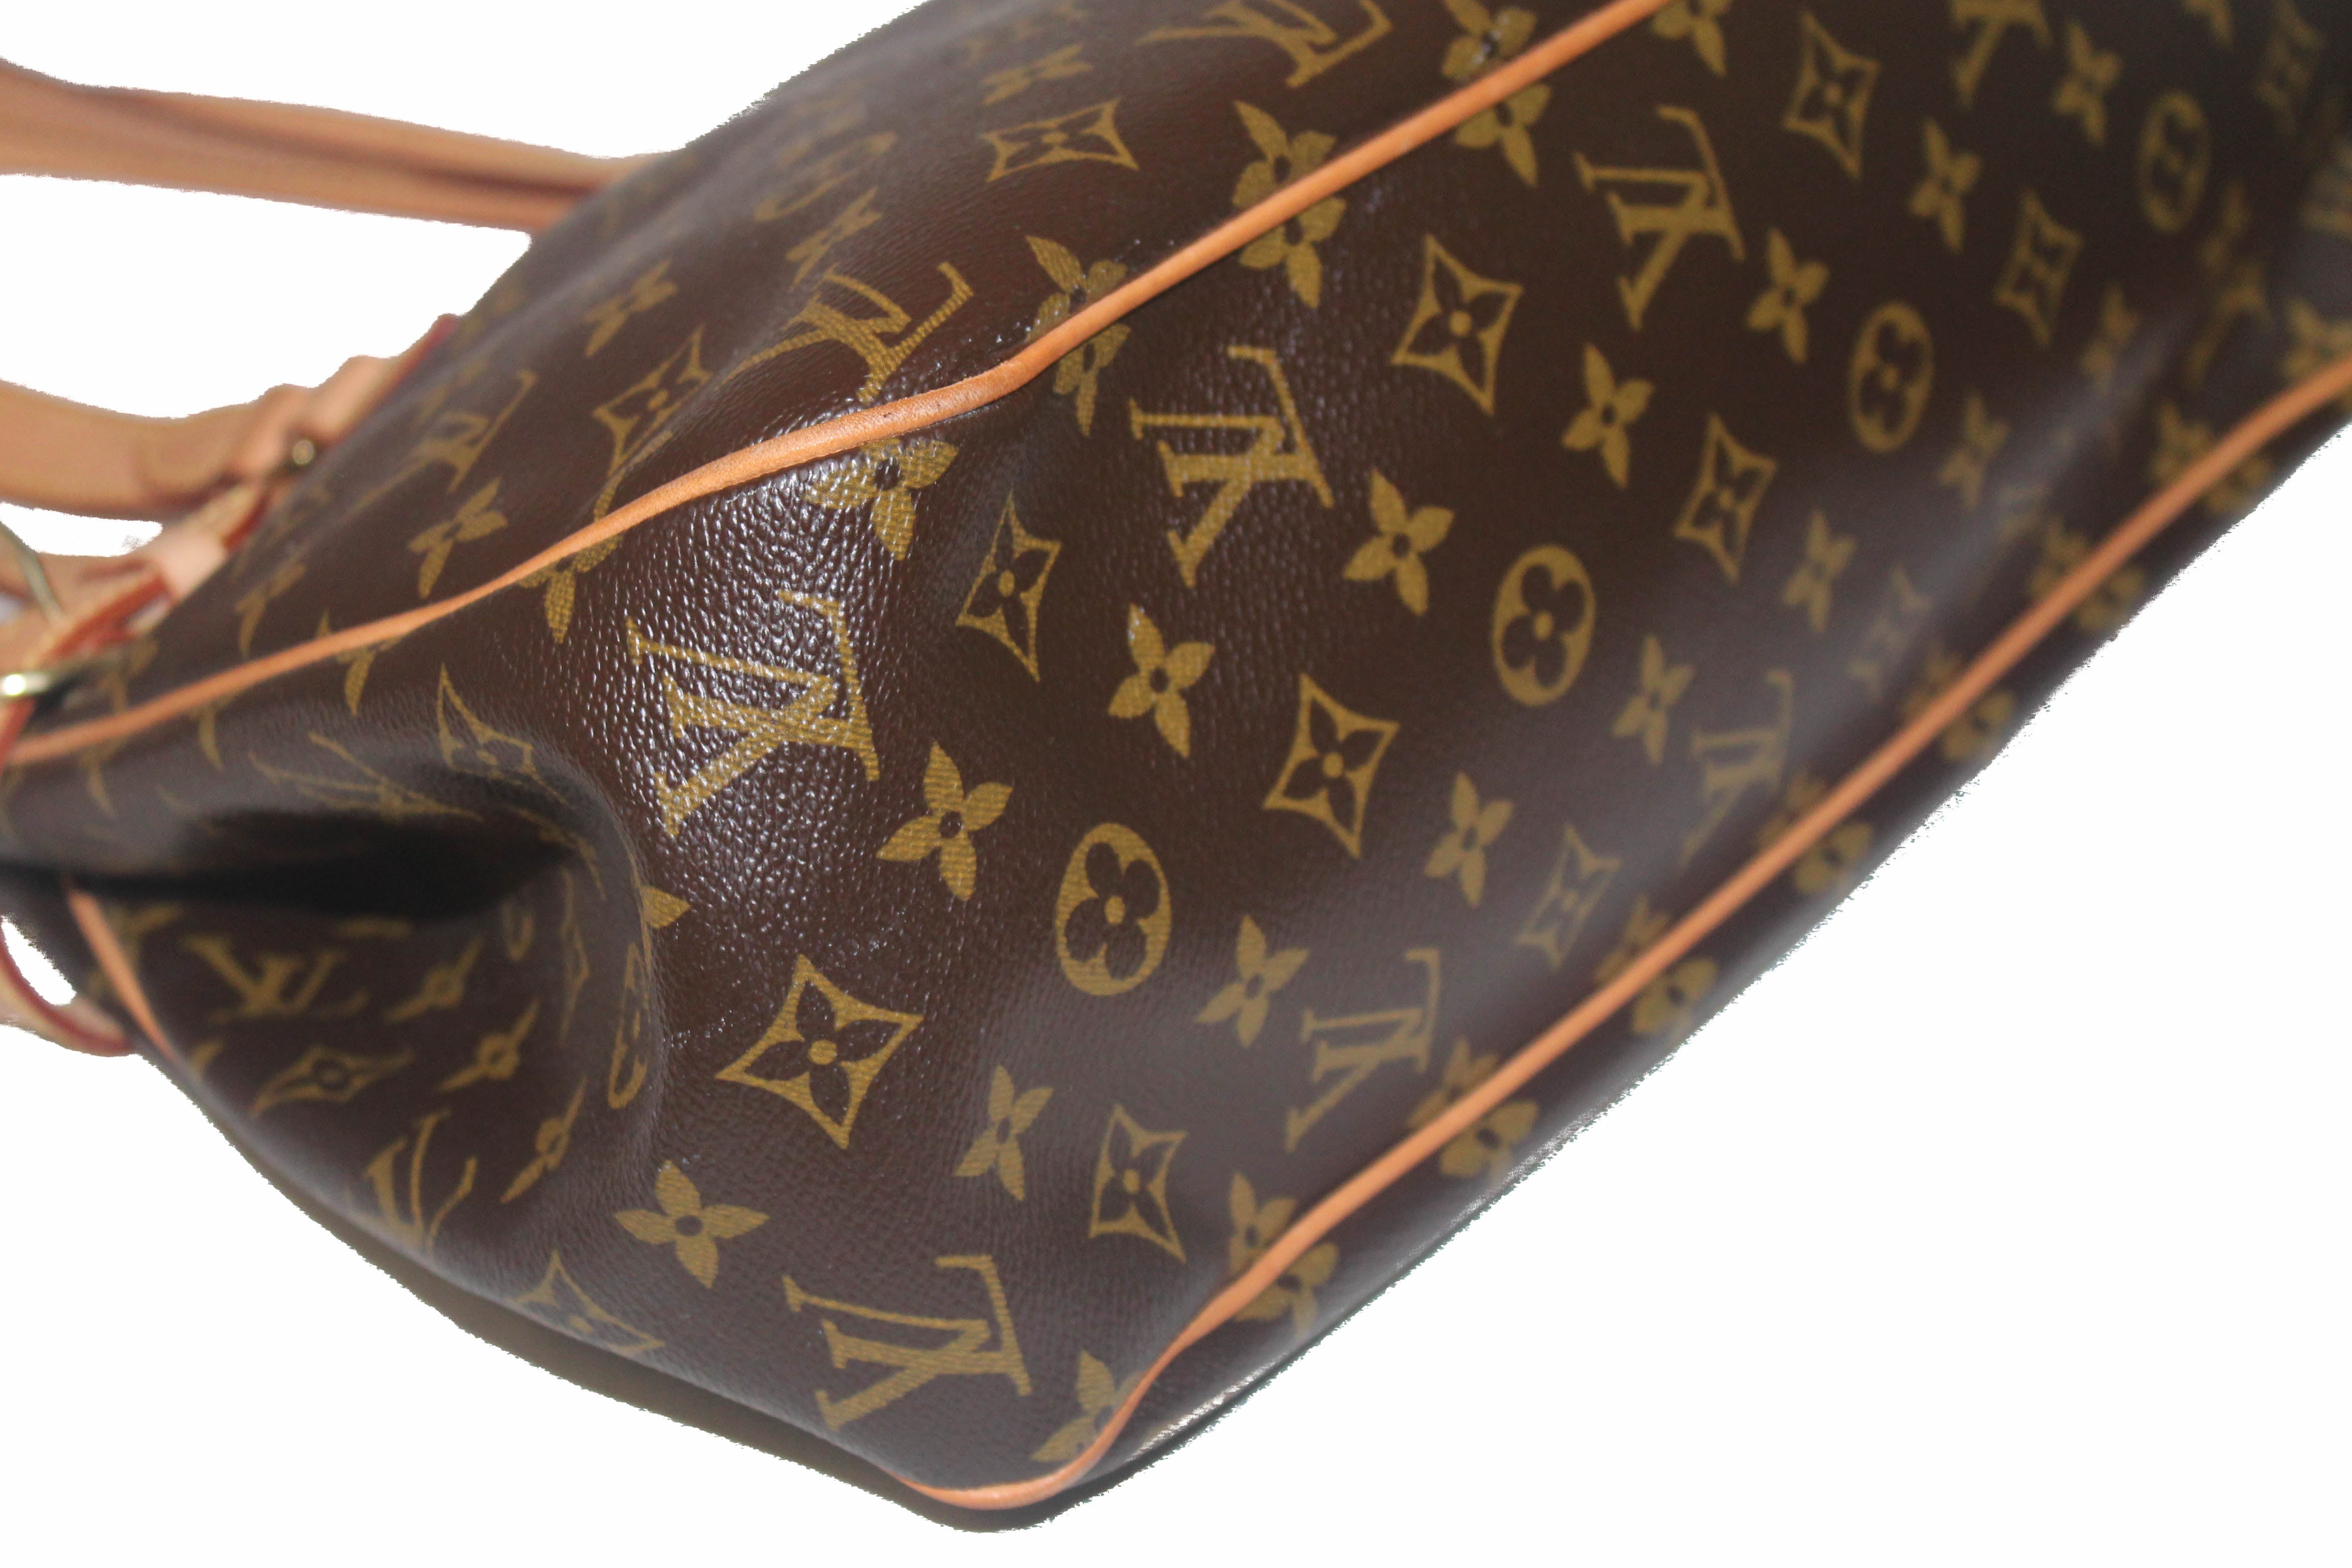 Louis Vuitton Monogram Canvas Tuileires (Authentic Pre-Owned) - ShopStyle  Shoulder Bags